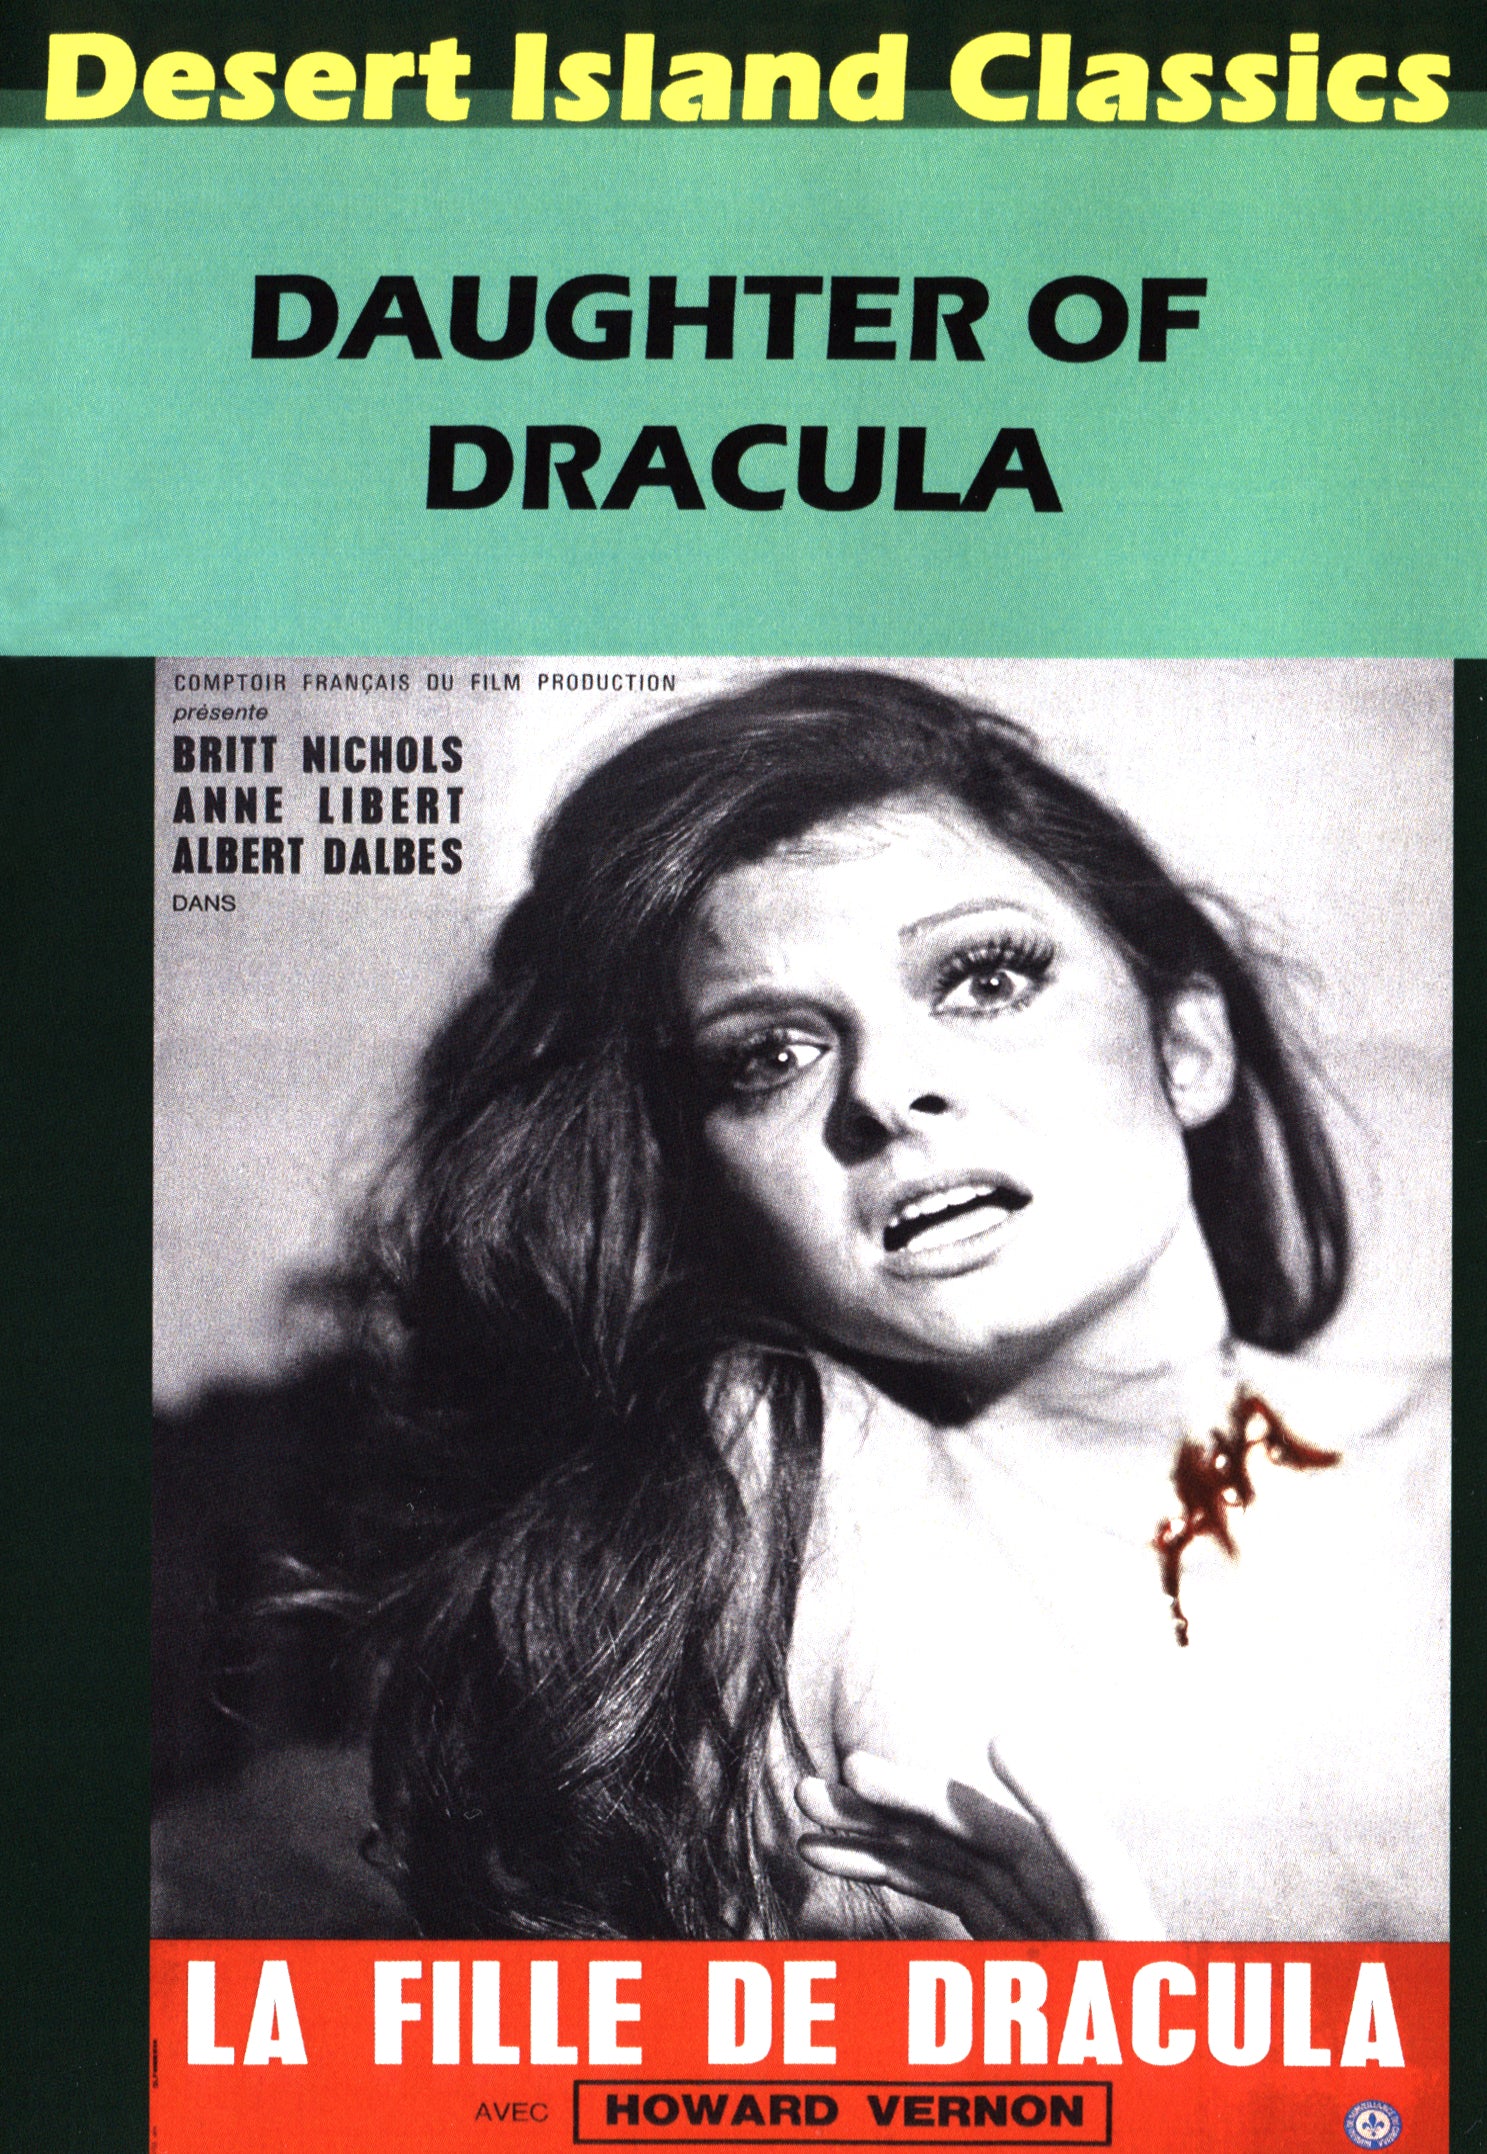 Daughter of Dracula cover art